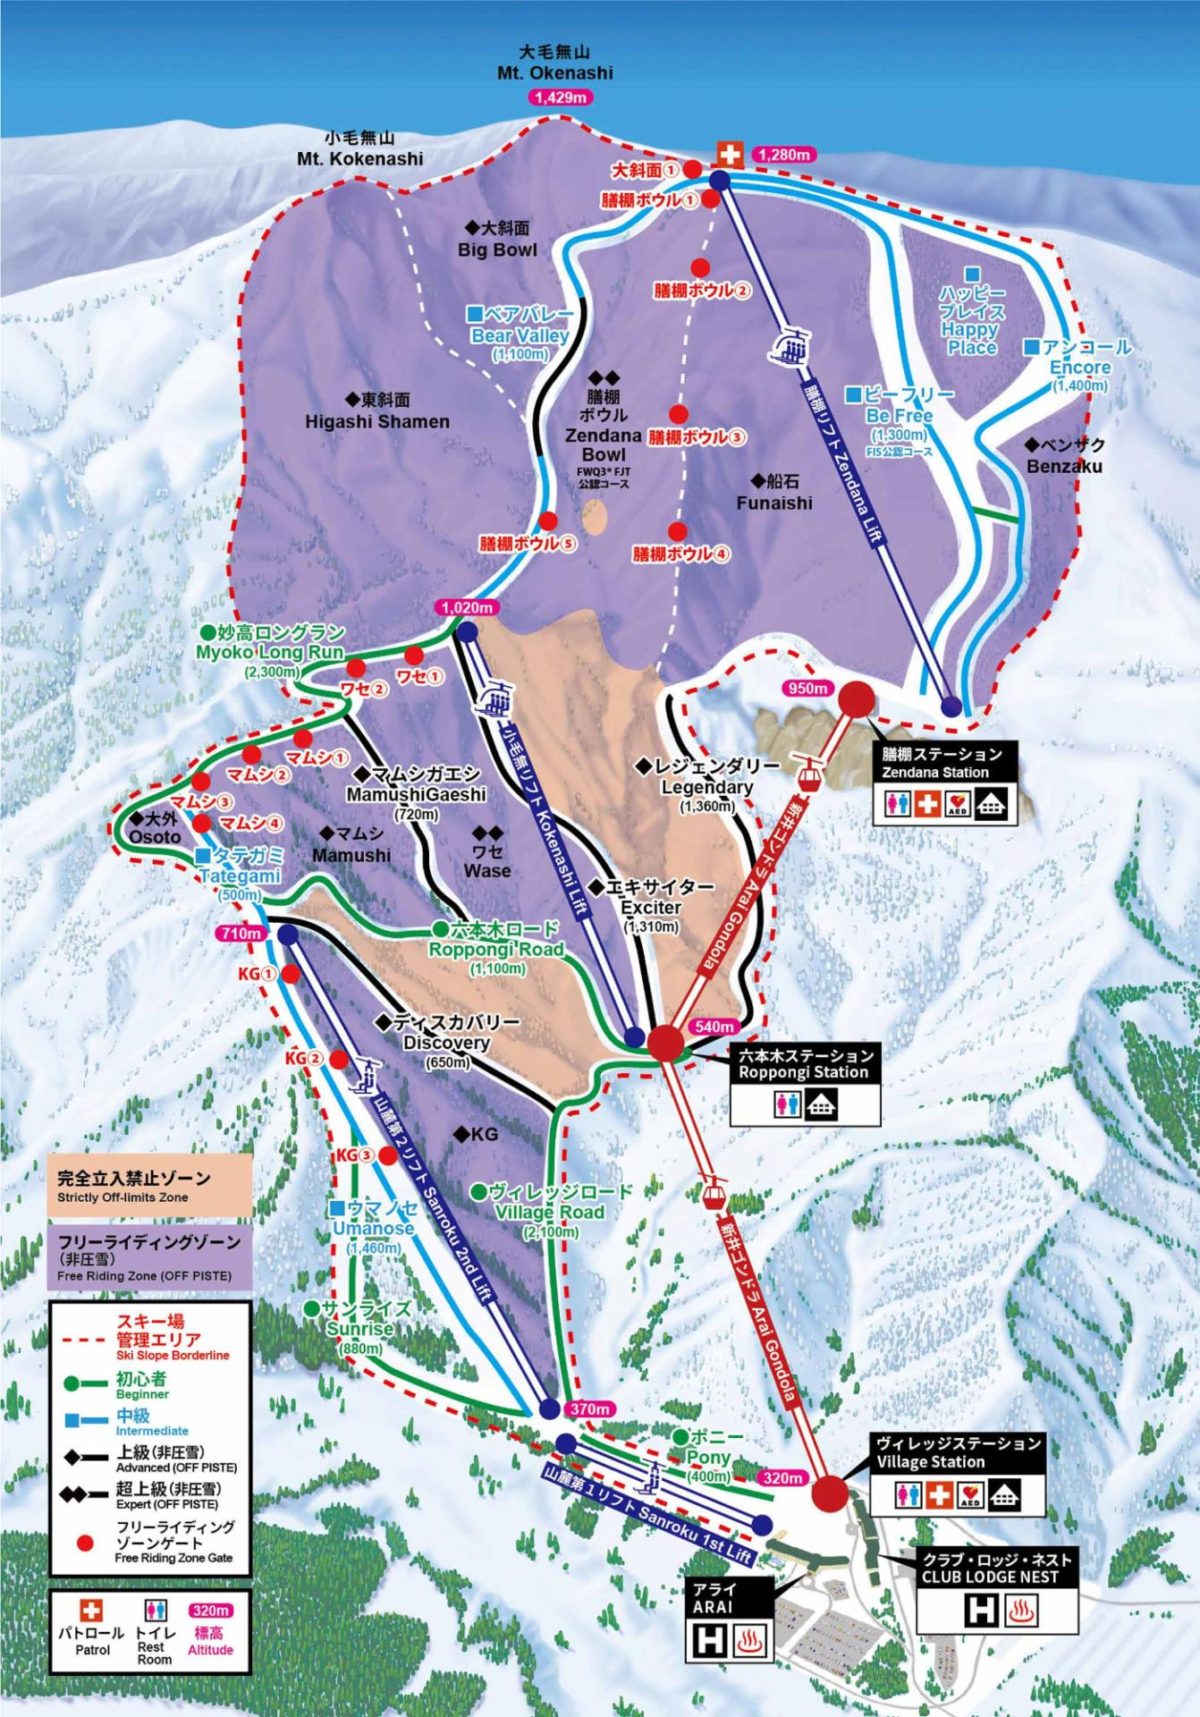 2020-21シーズンロッテアライリゾートリフト券 2枚セット - スキー場